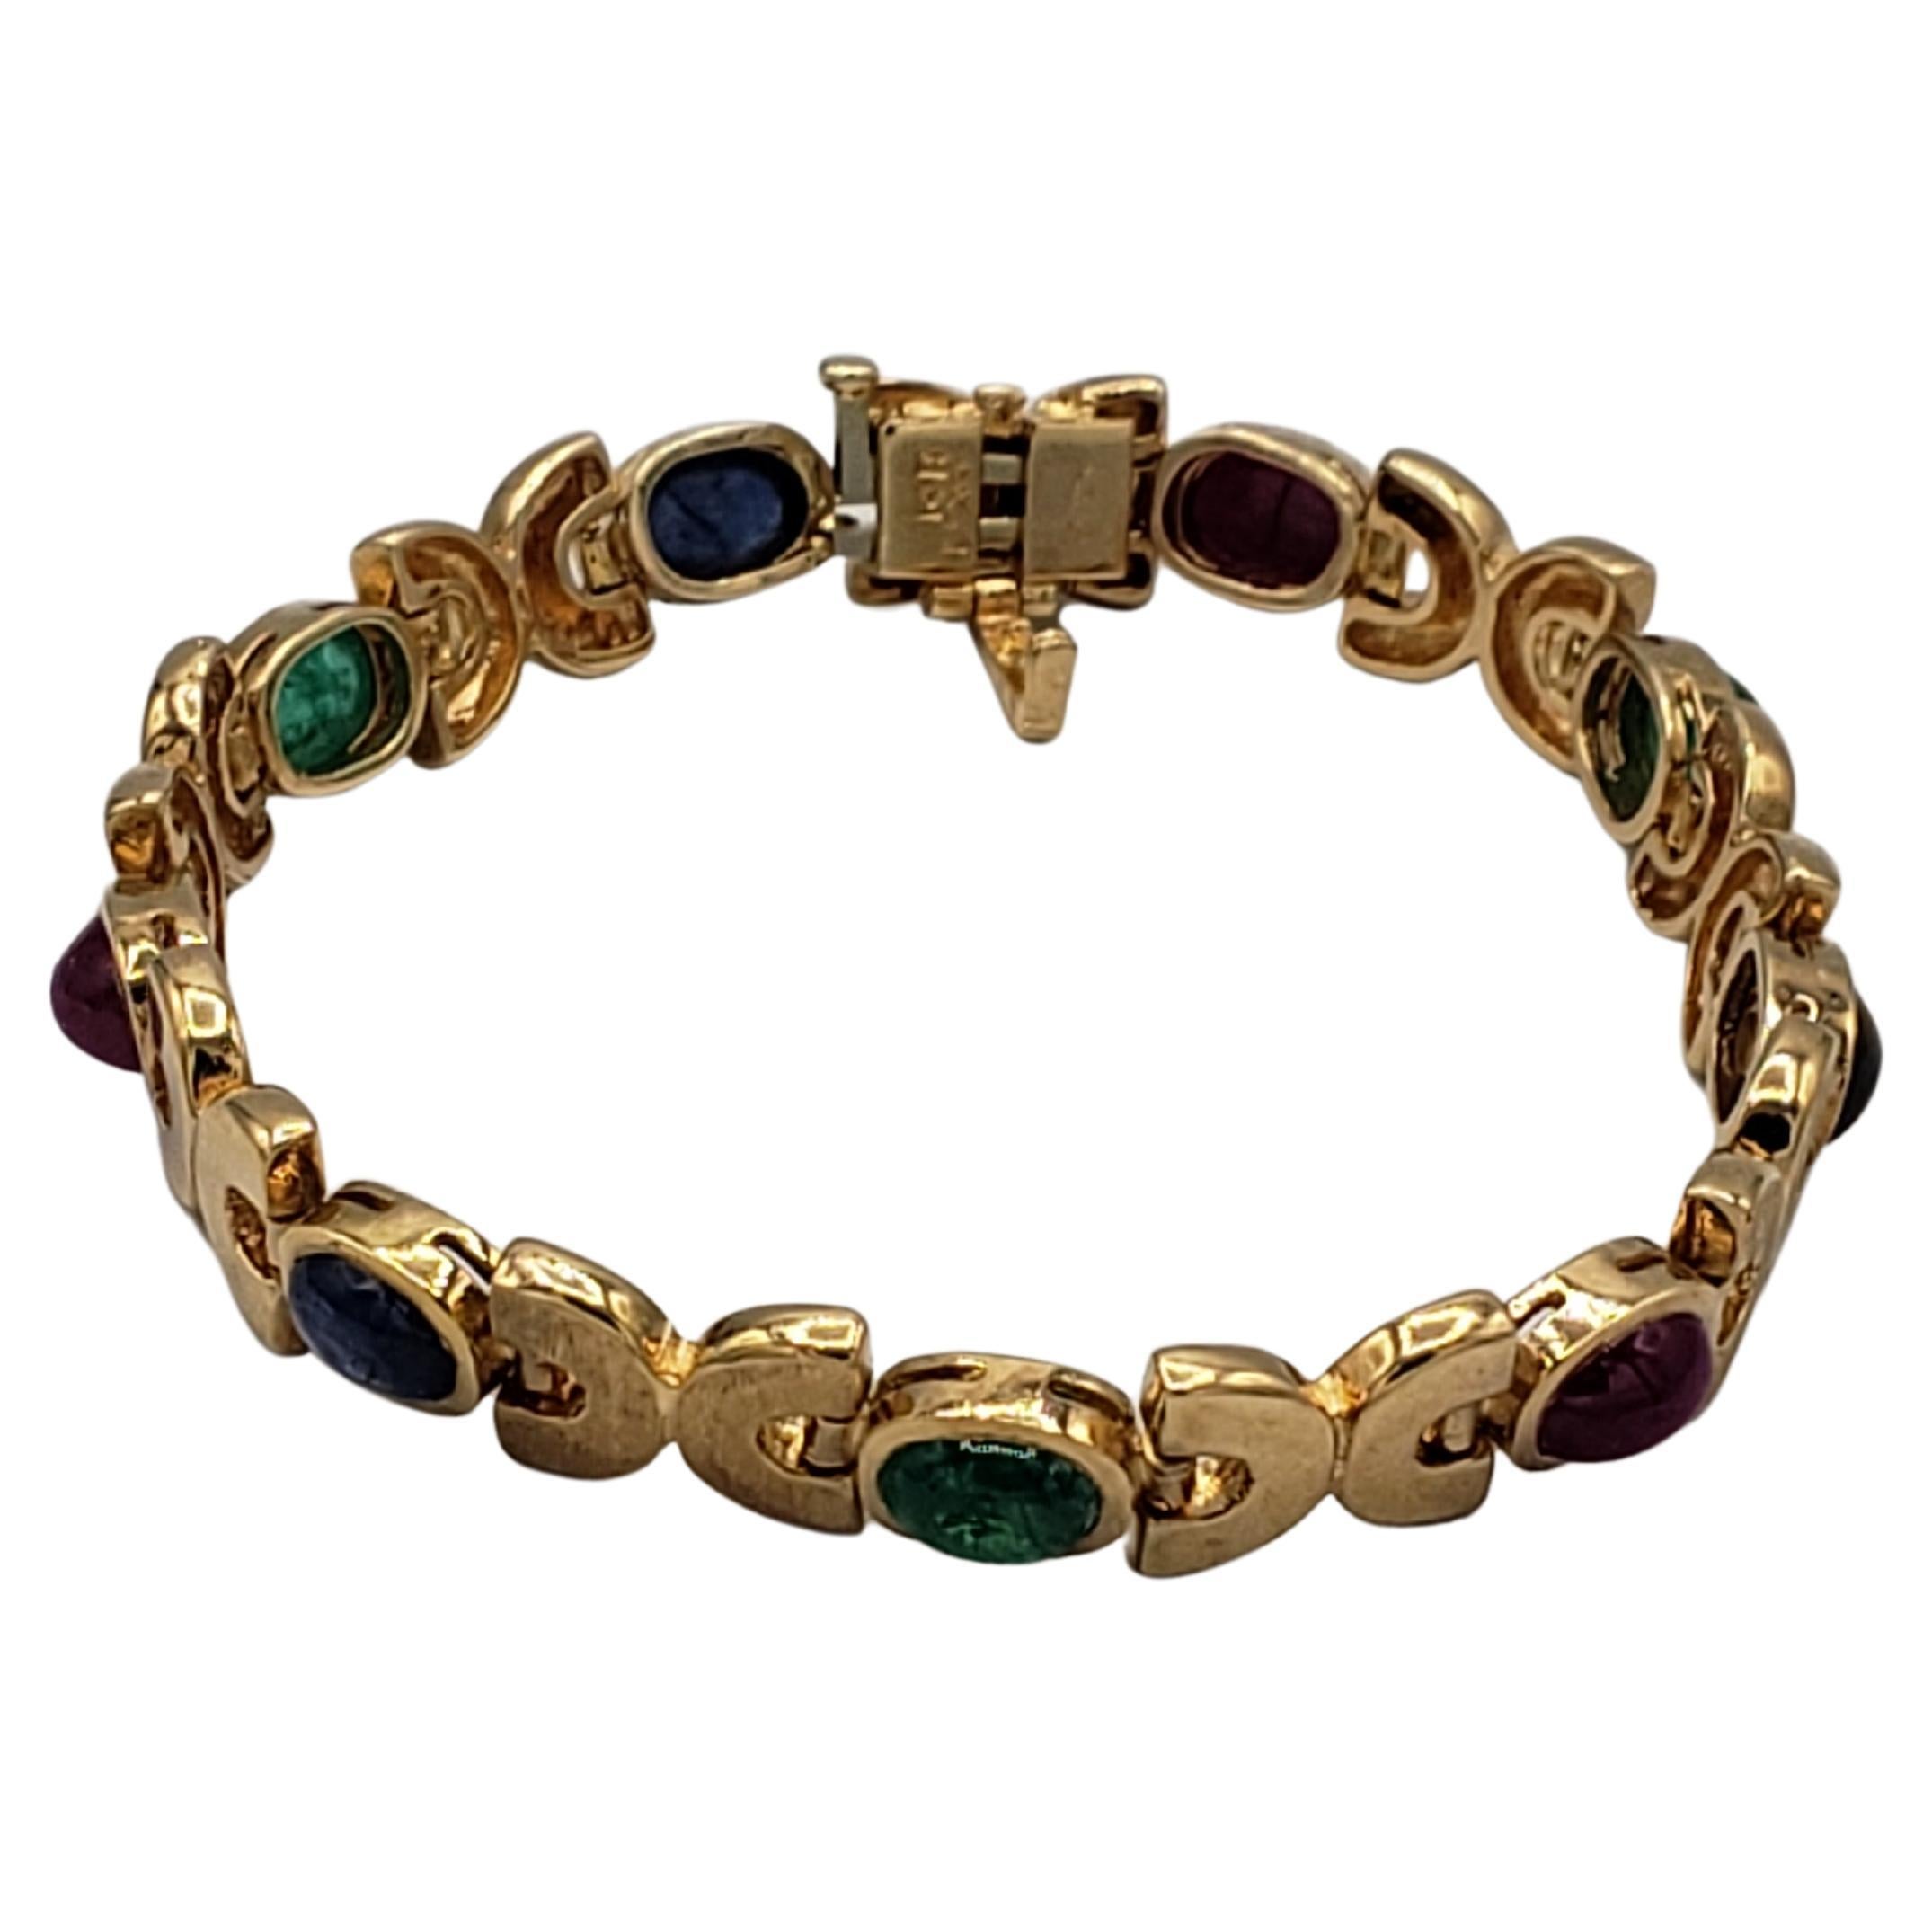 Ce bracelet exquis de LaFrancee est un véritable trésor pour toute collection de bijoux. Fabriquée en or jaune massif 14k et ornée d'étonnantes pierres précieuses naturelles (rubis, saphir et émeraude), cette pièce de style byzantin rayonne